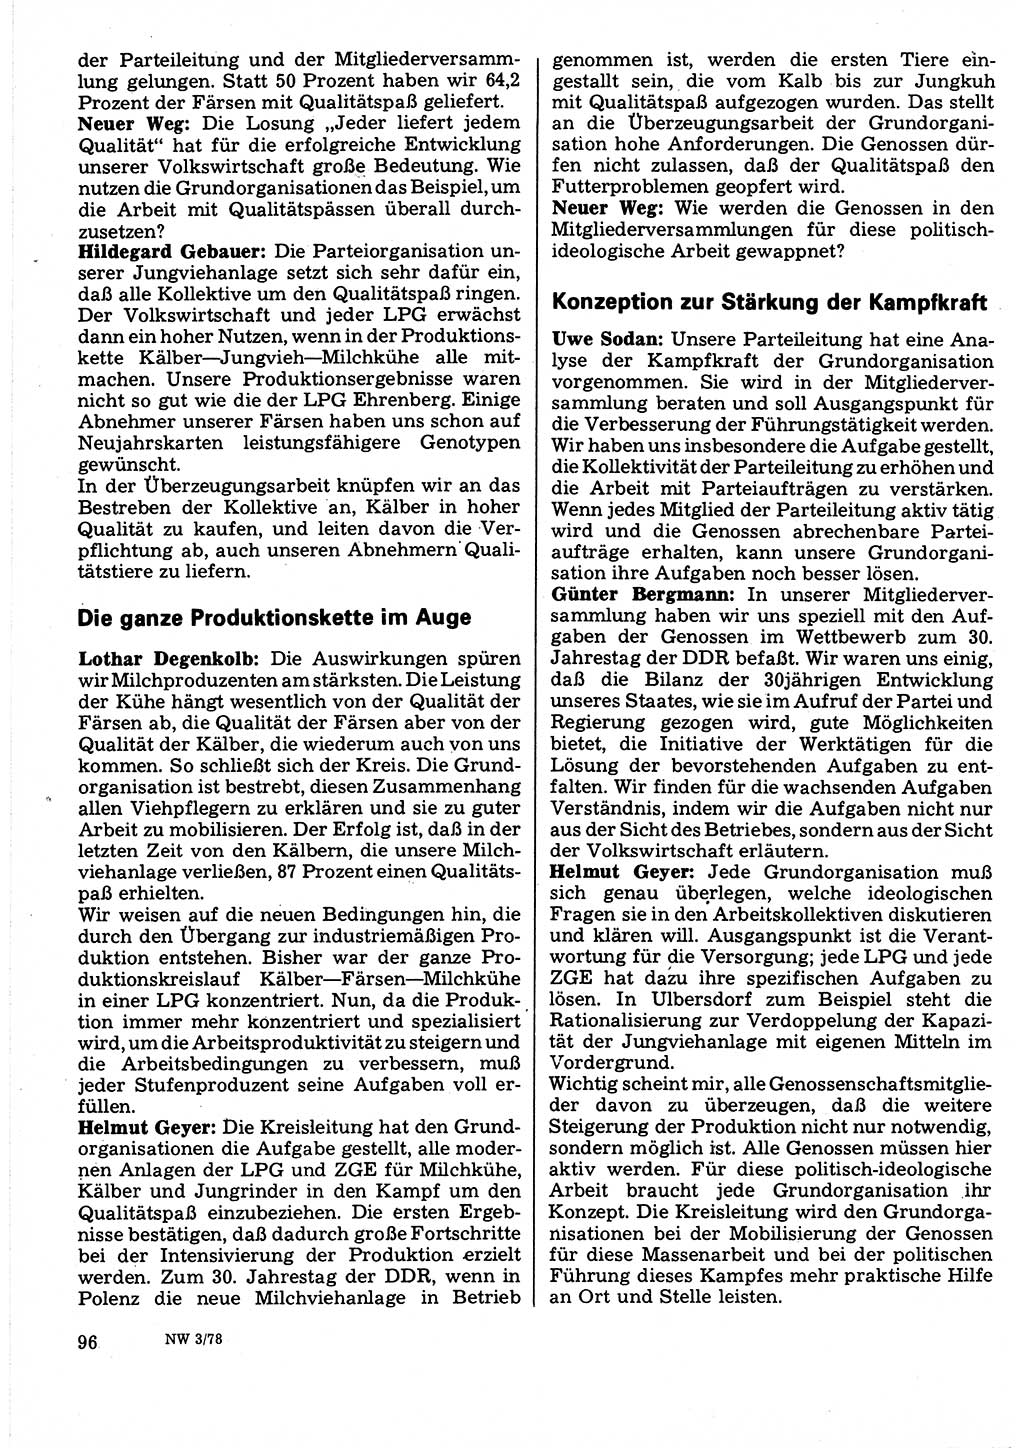 Neuer Weg (NW), Organ des Zentralkomitees (ZK) der SED (Sozialistische Einheitspartei Deutschlands) für Fragen des Parteilebens, 33. Jahrgang [Deutsche Demokratische Republik (DDR)] 1978, Seite 96 (NW ZK SED DDR 1978, S. 96)